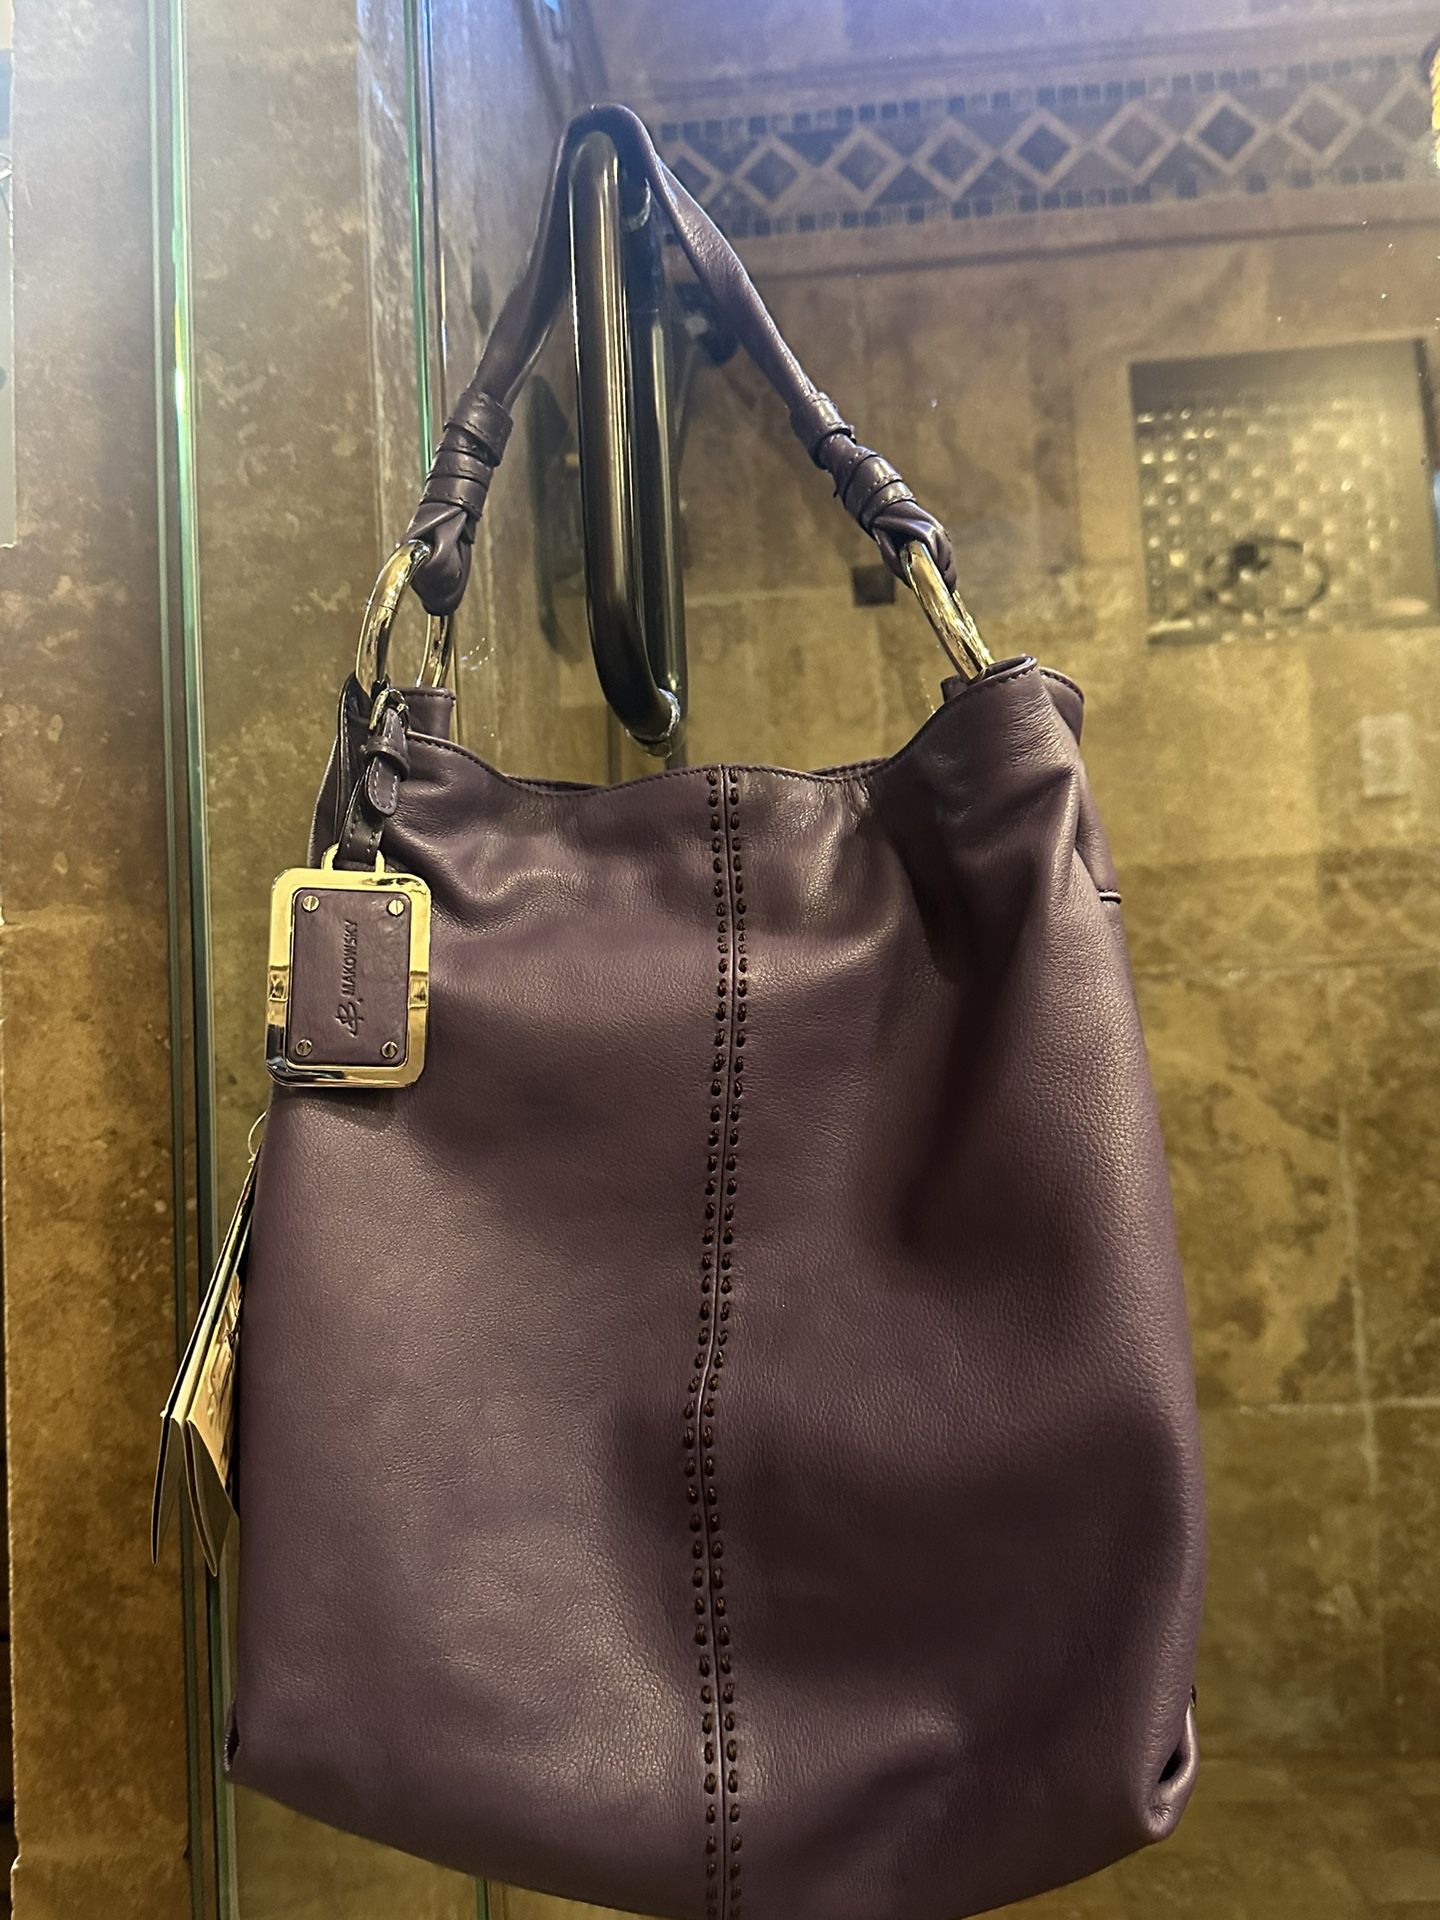 B. Makowsky Purple Leather Bag Purse **BRAND NEW**